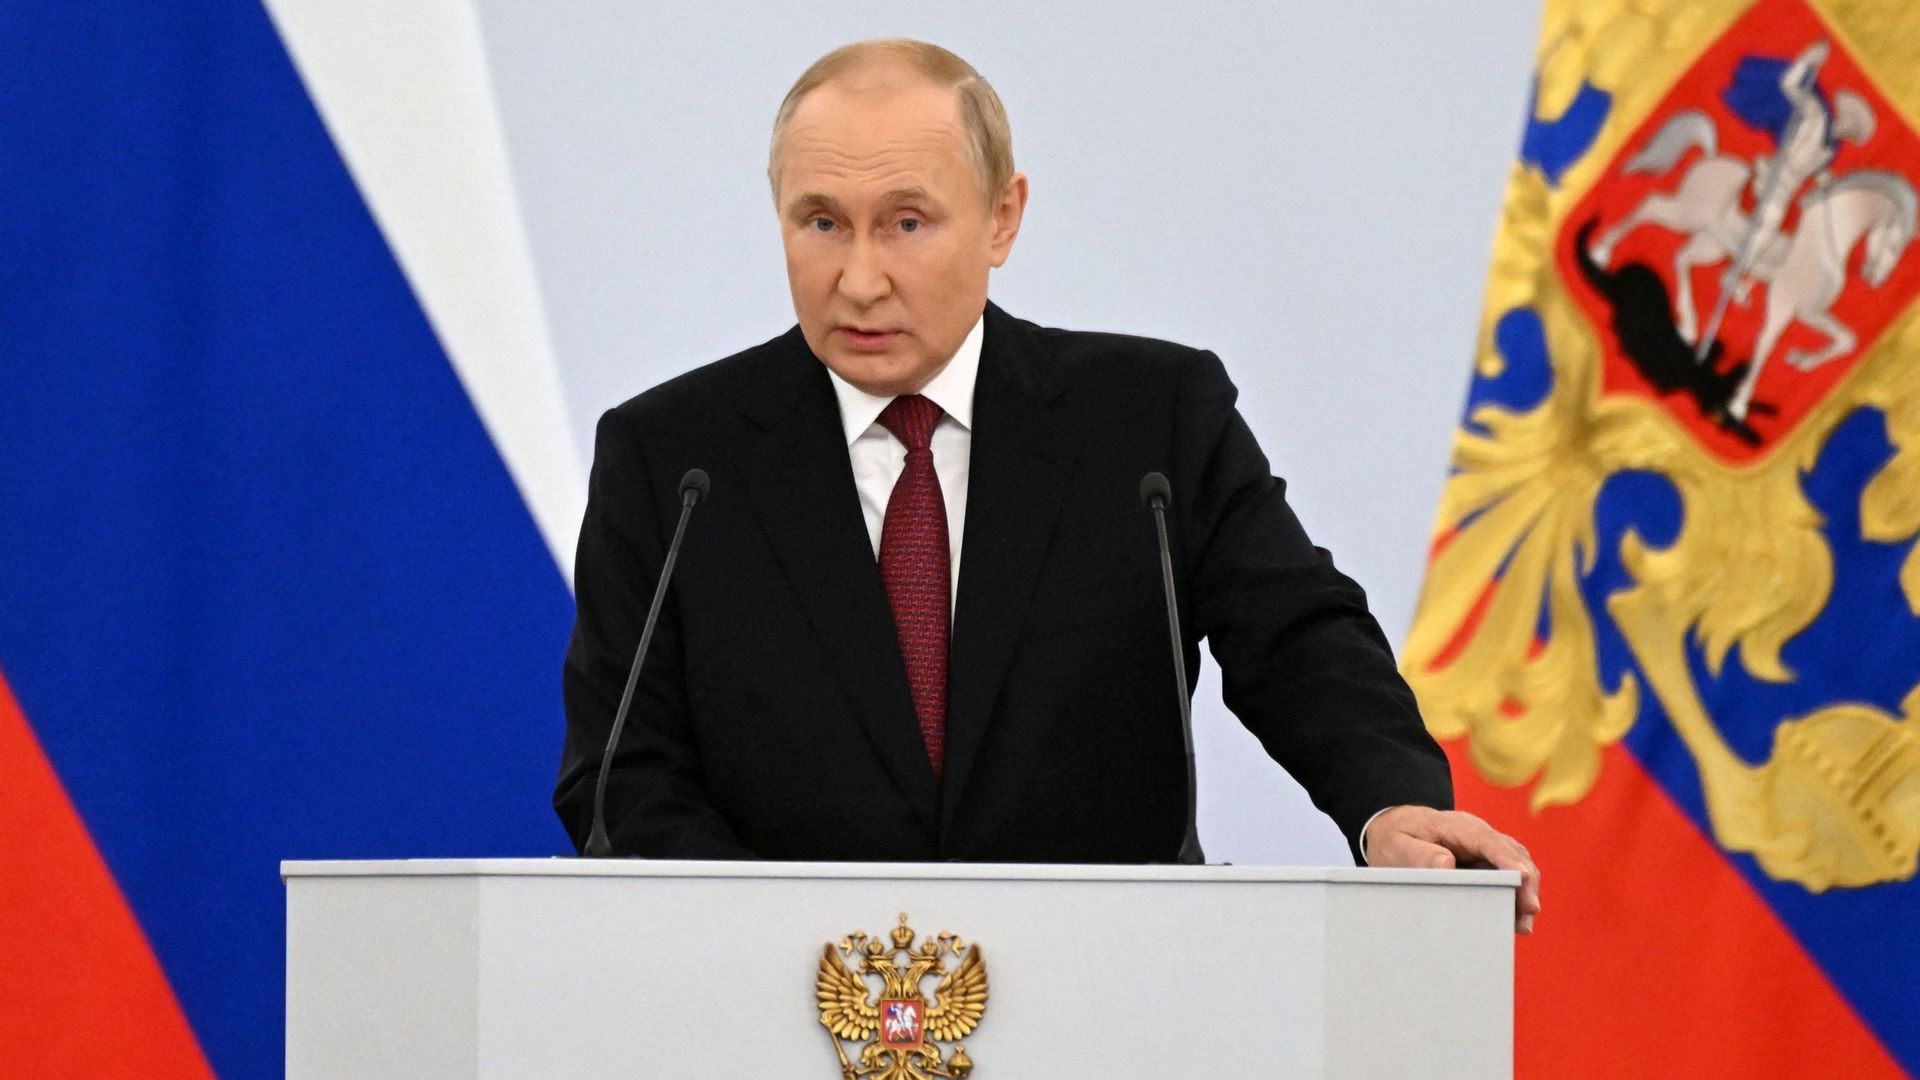 Le président russe Vladimir Poutine a officialisé l’annexion de quatre régions ukrainiennes.